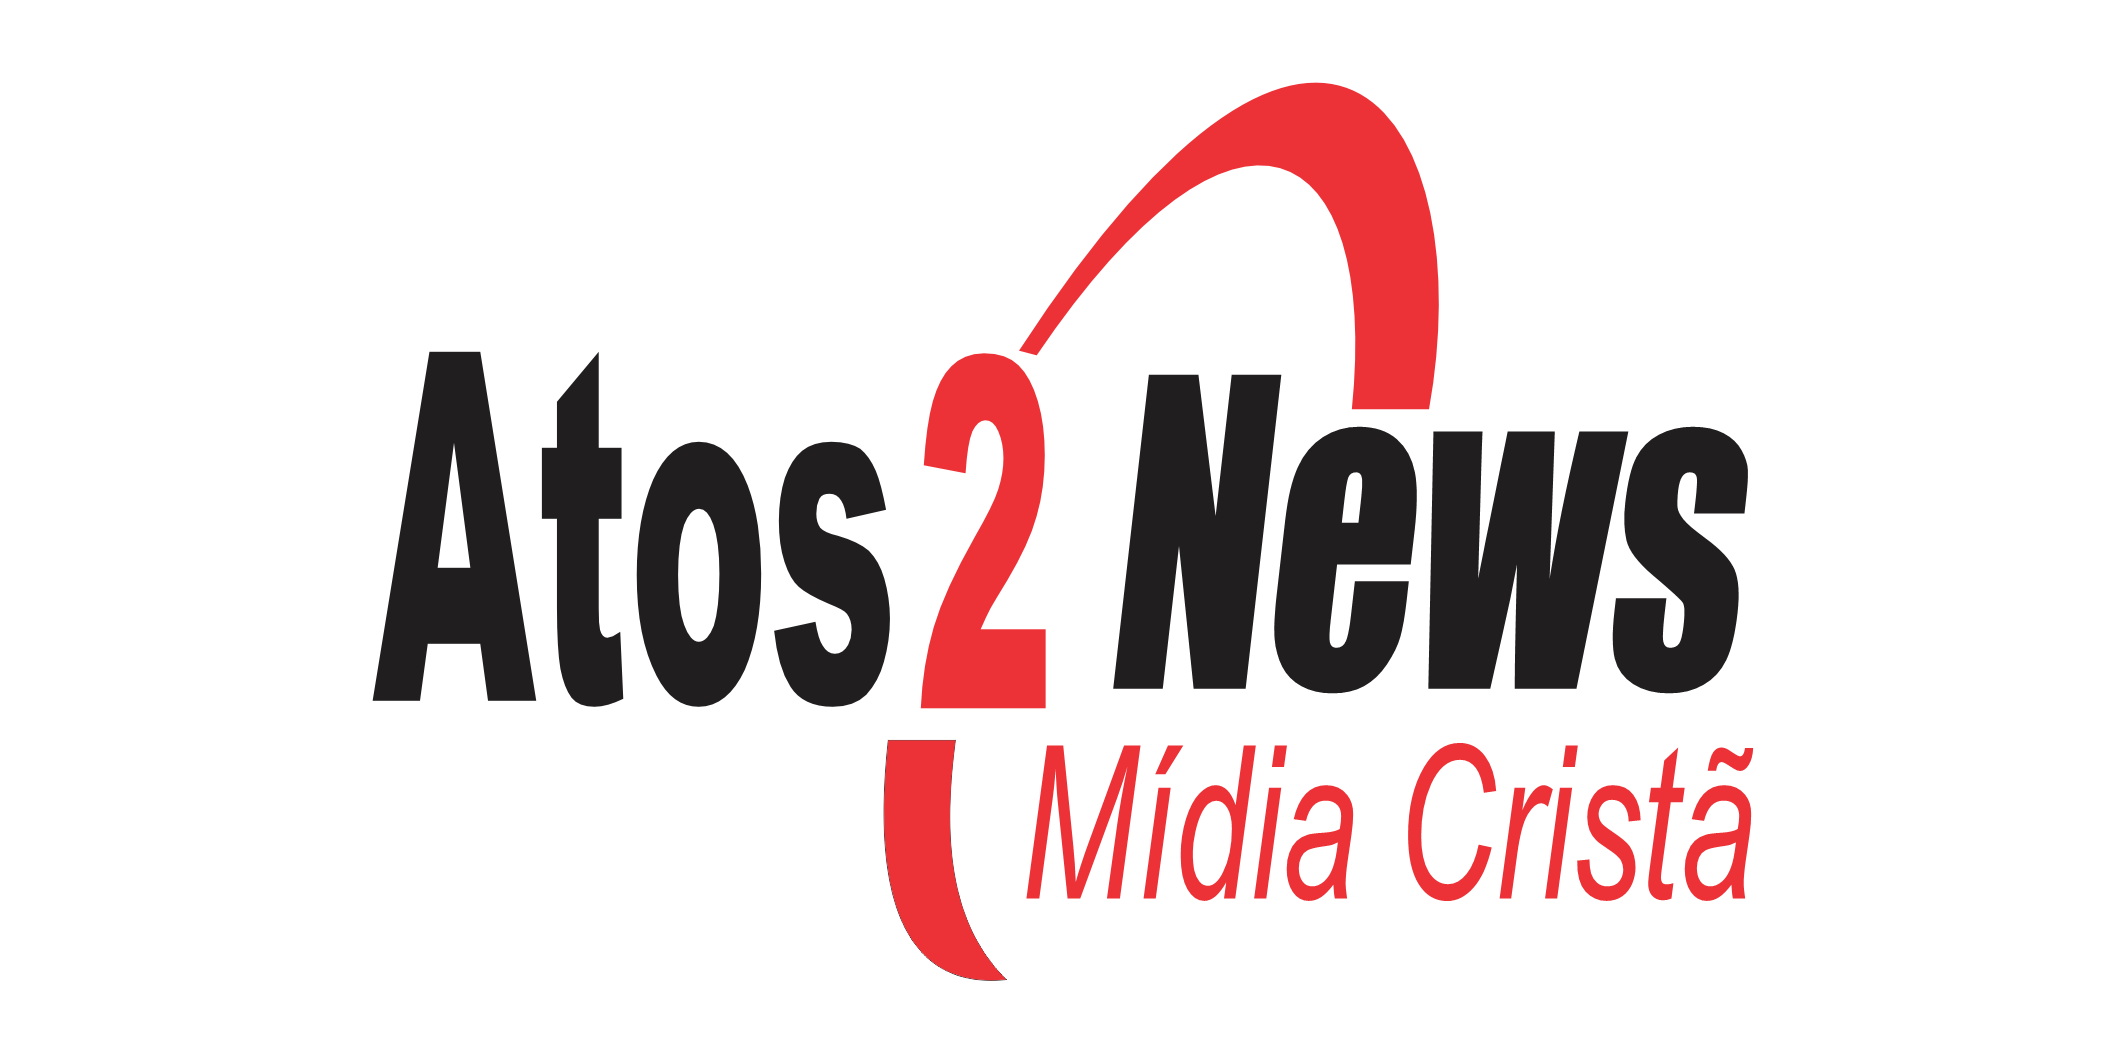 Atos2 News